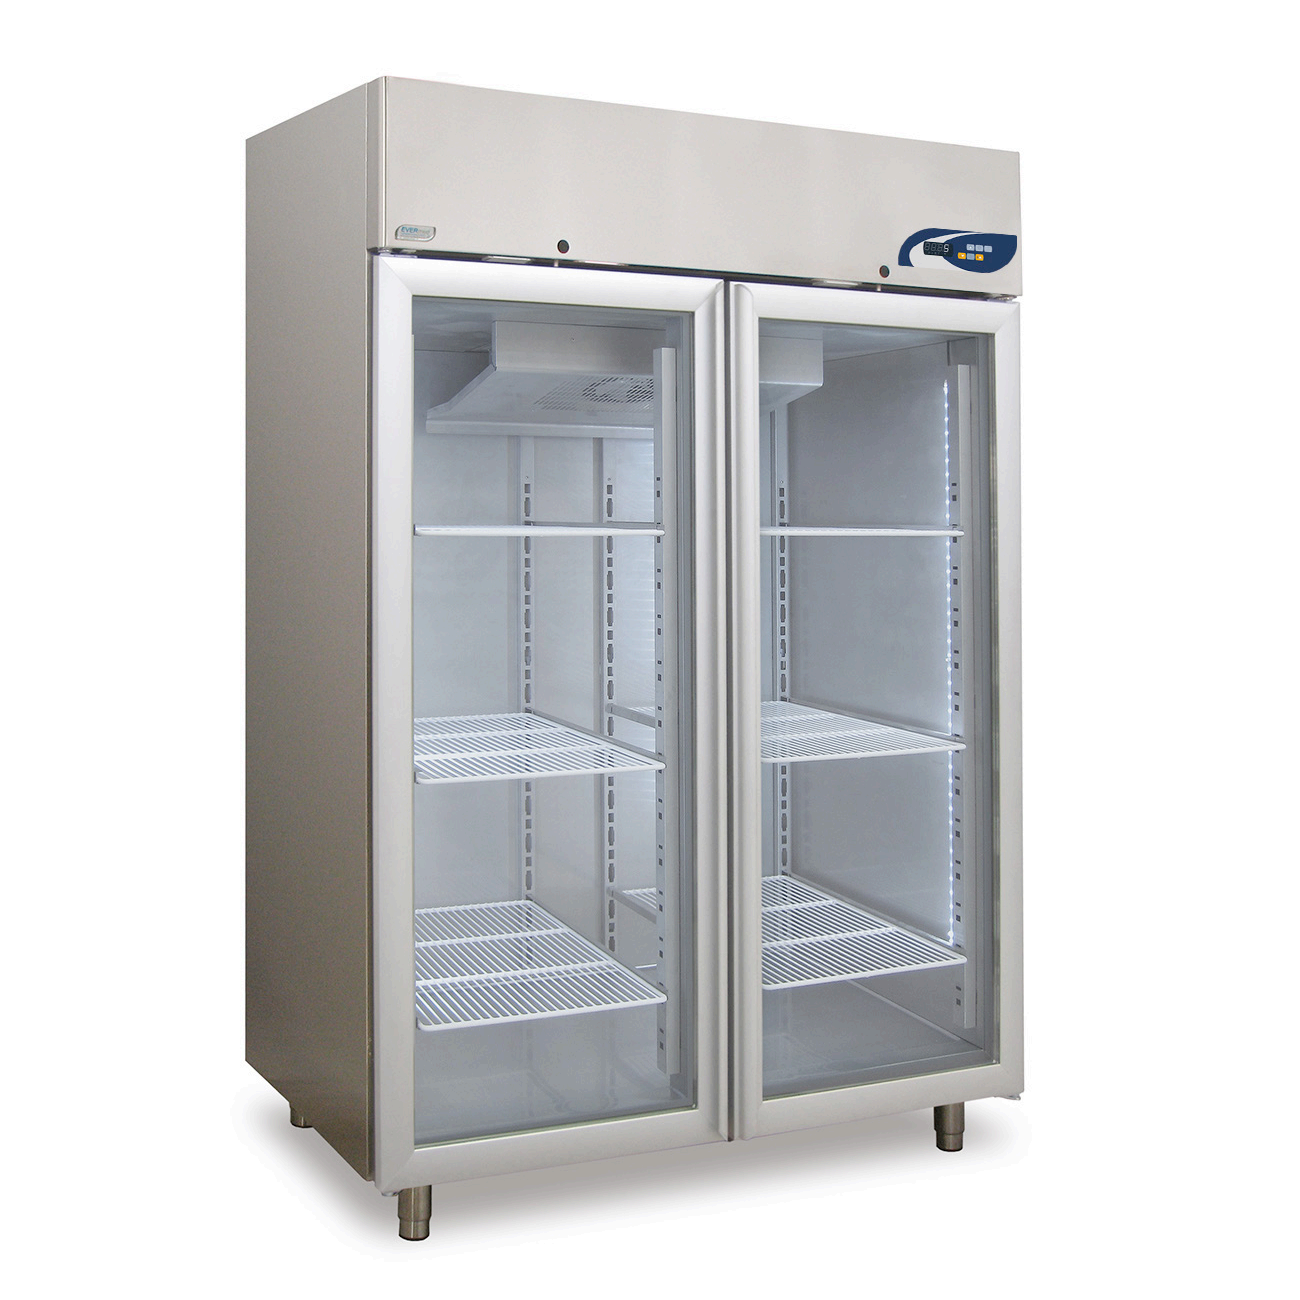 Tủ lạnh bảo quan mẫu MPR 1365 +2°C to +15°C